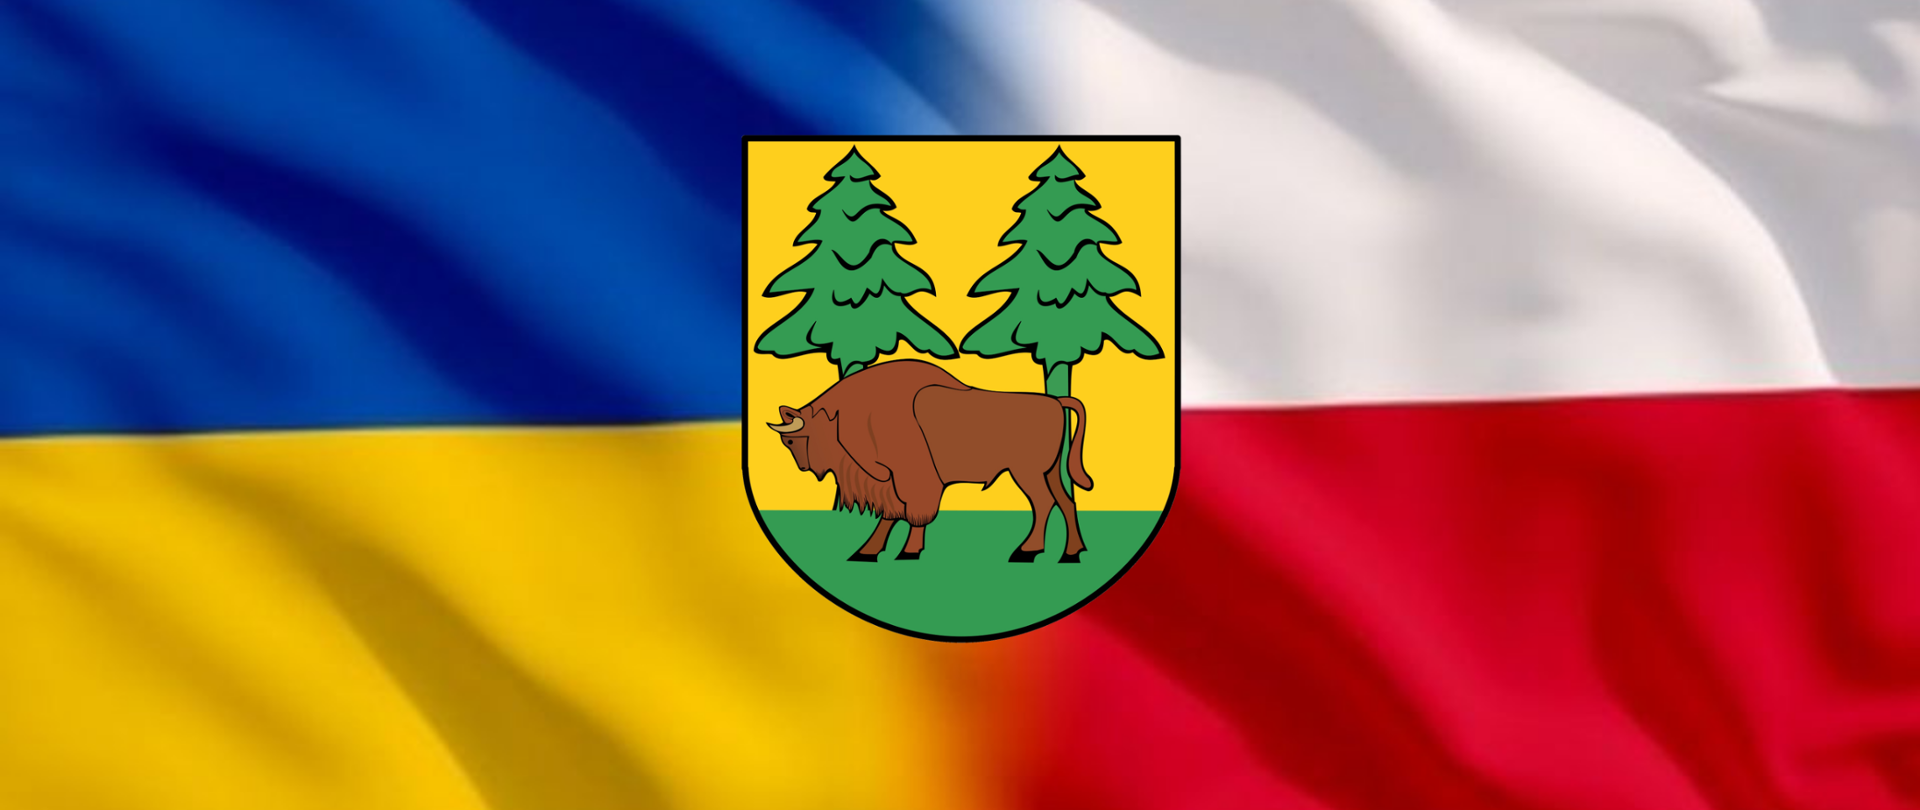 Herb powiatu (na żółtym tle żubr i dwa świerki) na tle flag Polski i Ukrainy